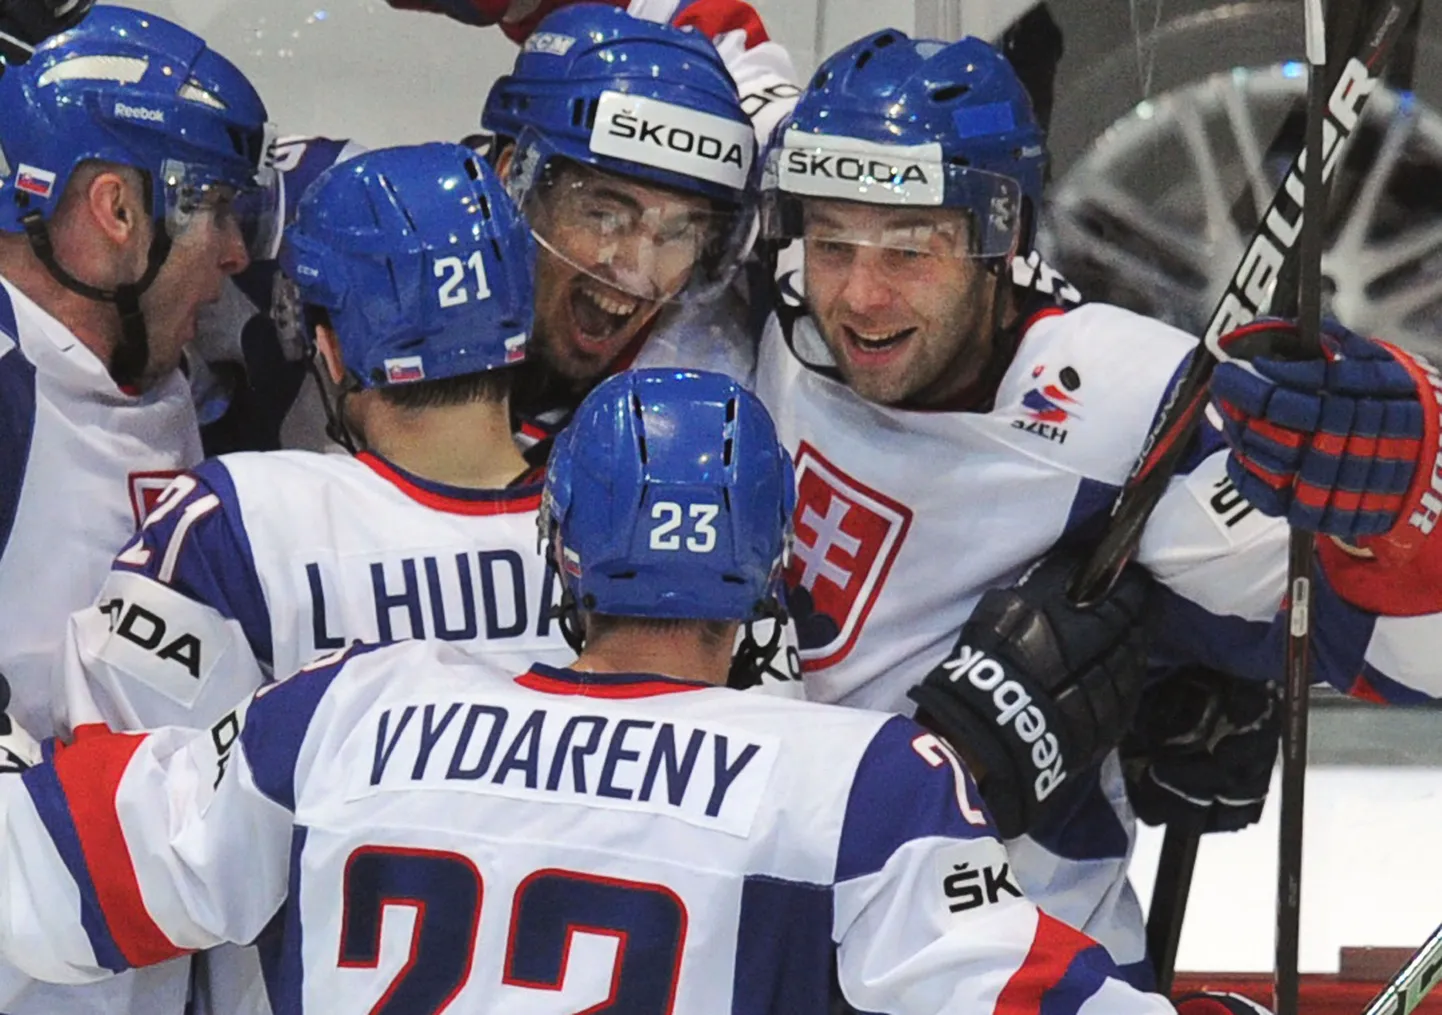 Slovakkia mängijad Kanadale löödud väravat tähistamas.